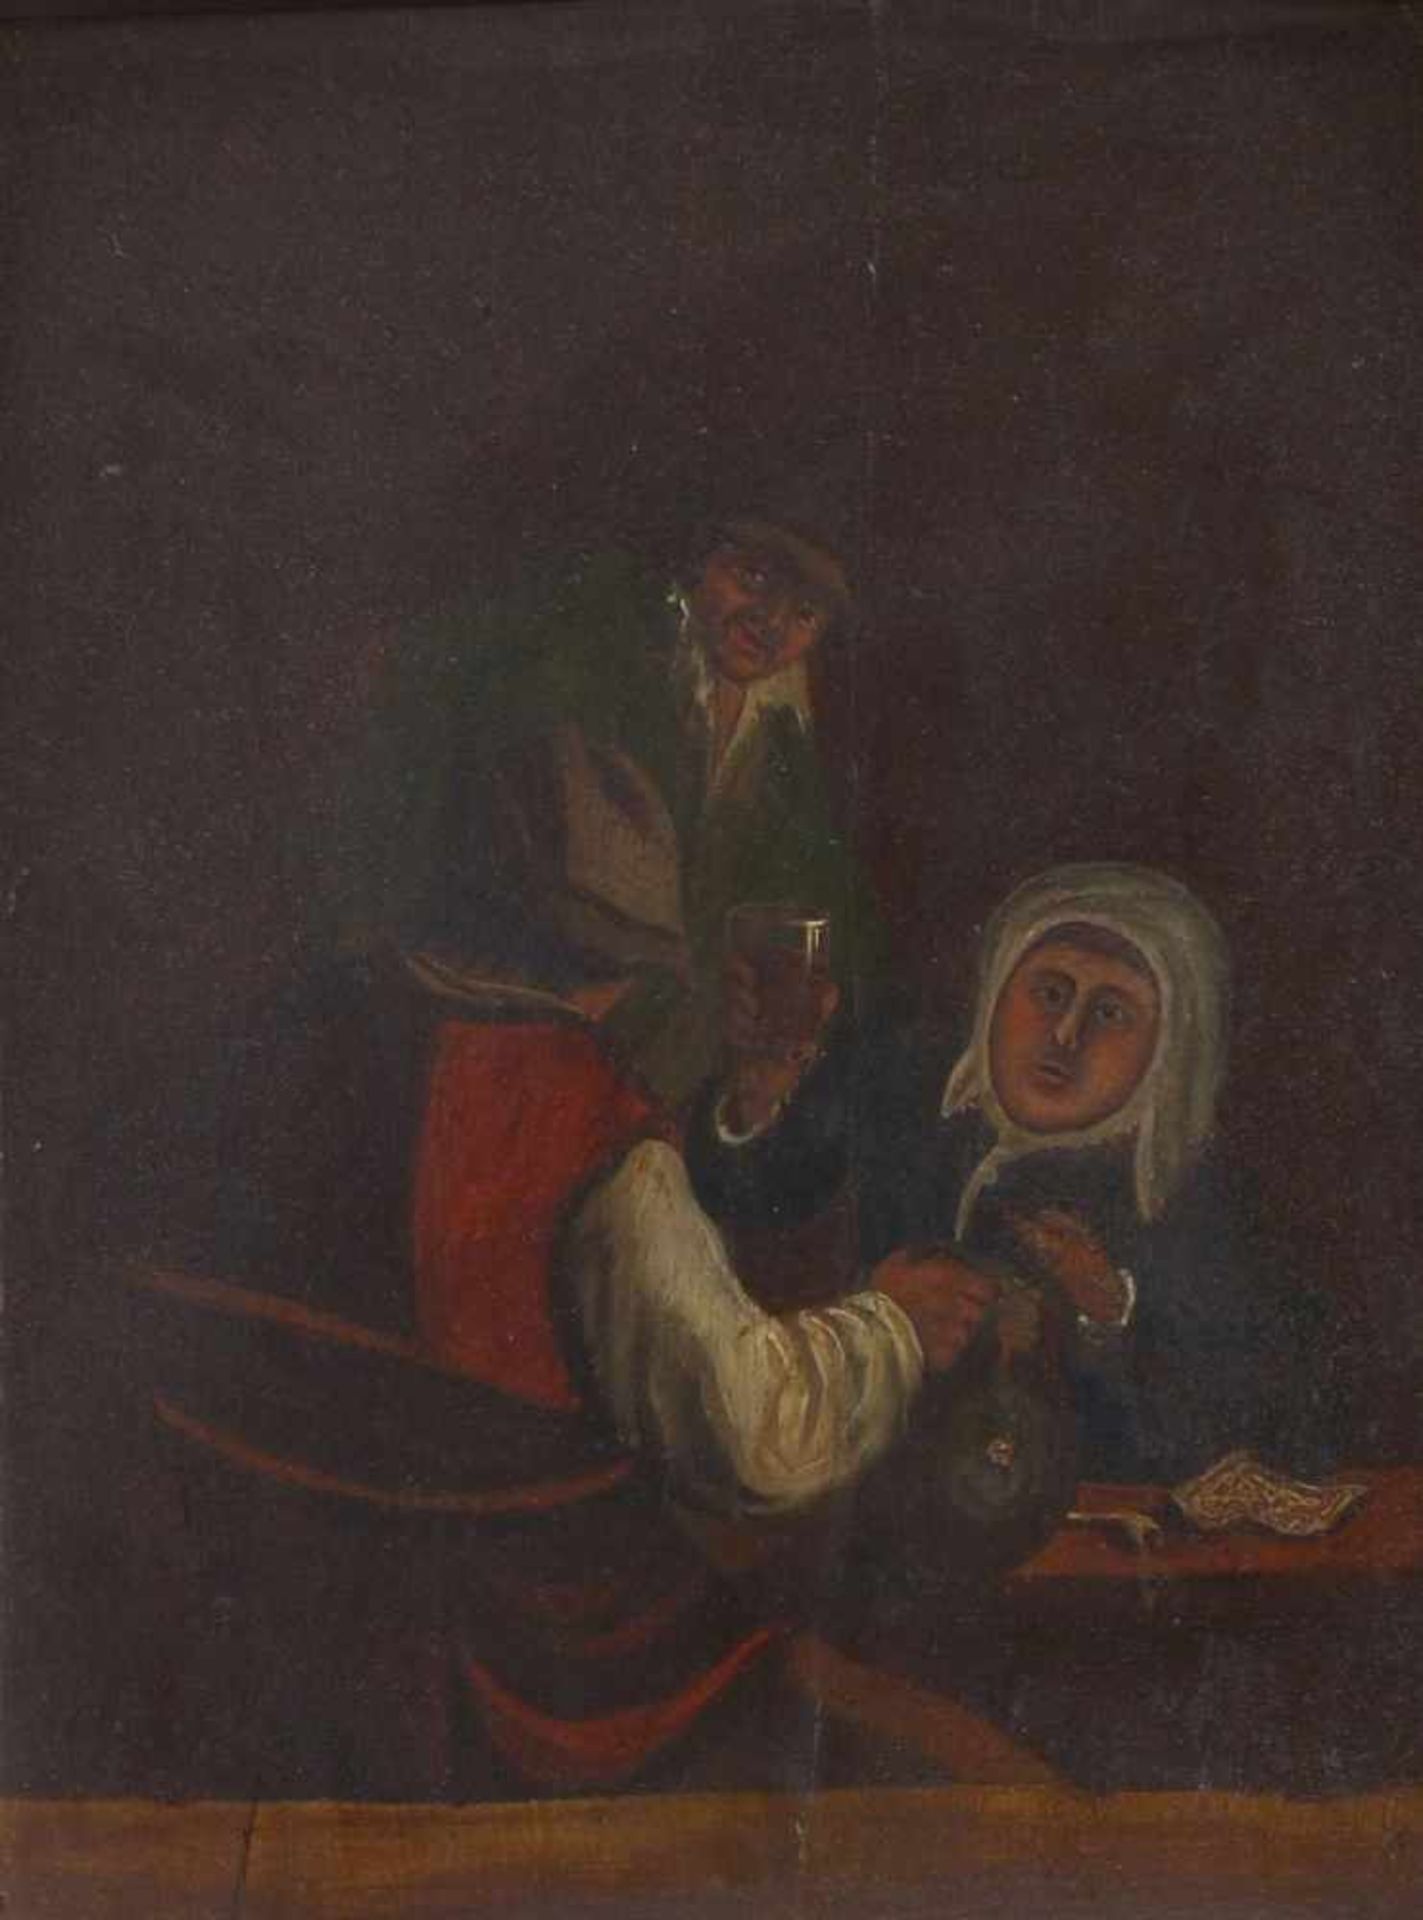 Unbekannter Maler des fr. 18. JahrhundertsDrei Zecher am WirtshaustischUm 1700. Öl/Holz. 25 x 20,3